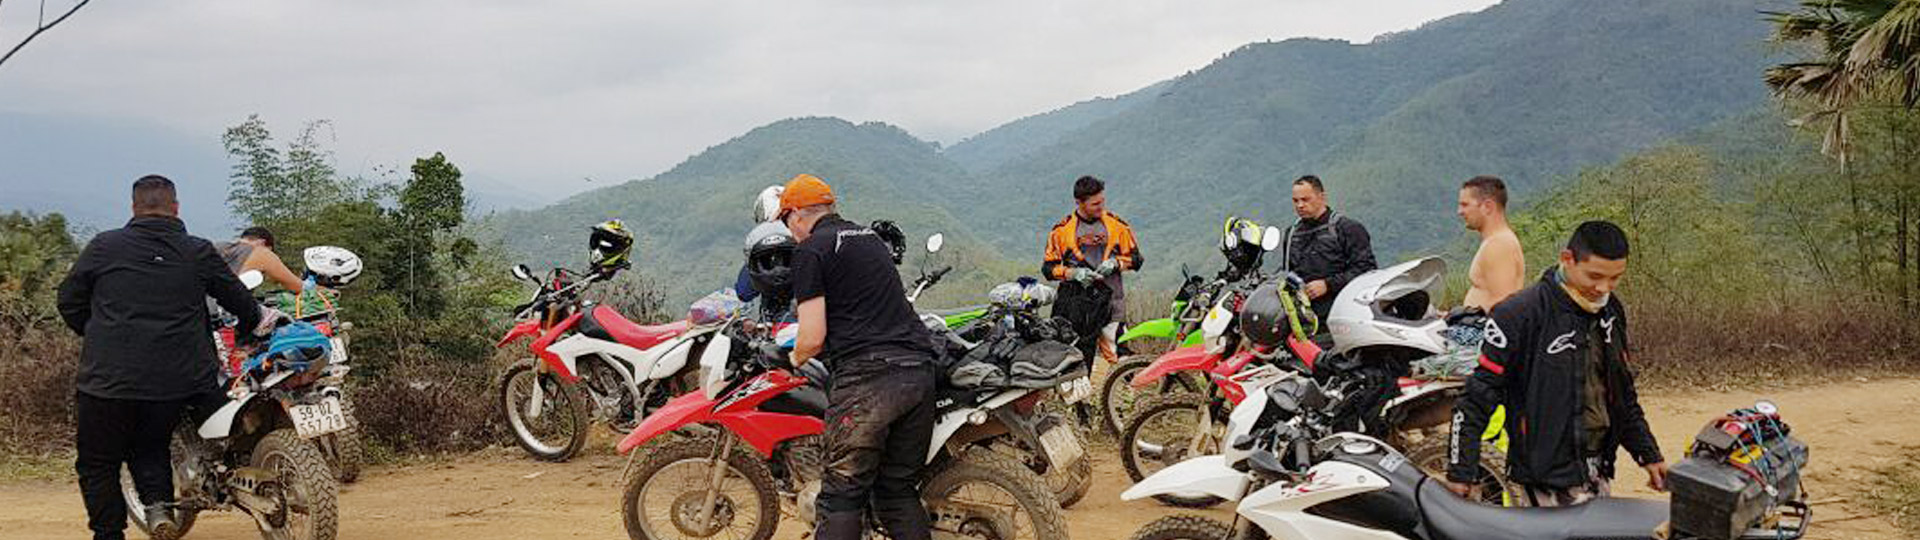 9 days Mandalay Motorbike Tour To Inle Lake